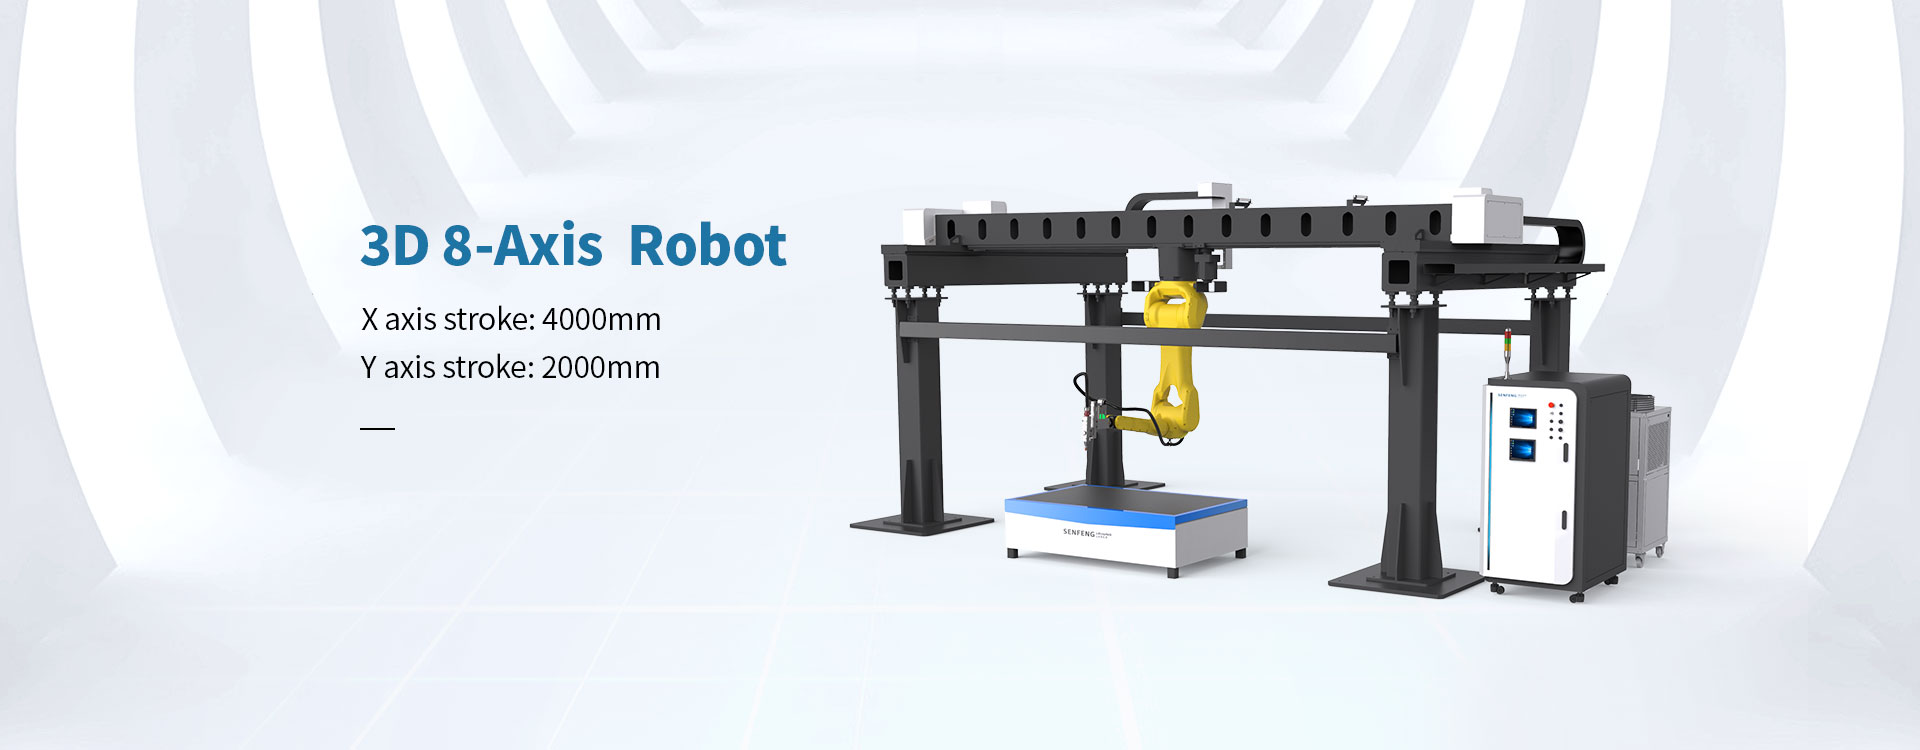 3D 8-Axis Robot machine